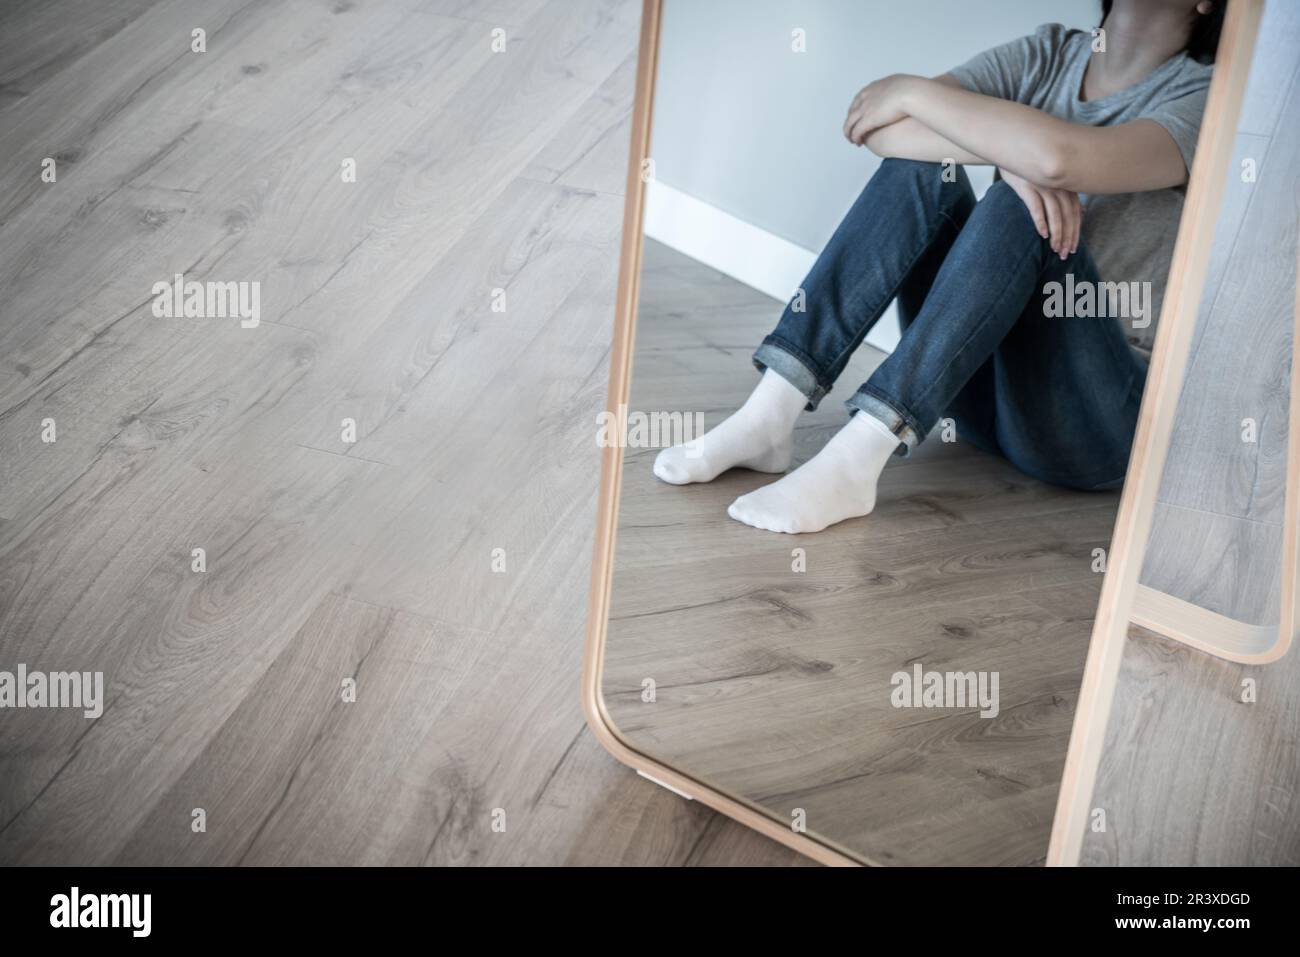 Reflexion im Spiegel einer traurigen Frau, die allein auf dem Boden sitzt, in einem leeren Raum, verzweifelt und einsam Konzept mit Kopierraum, Grauton Stockfoto